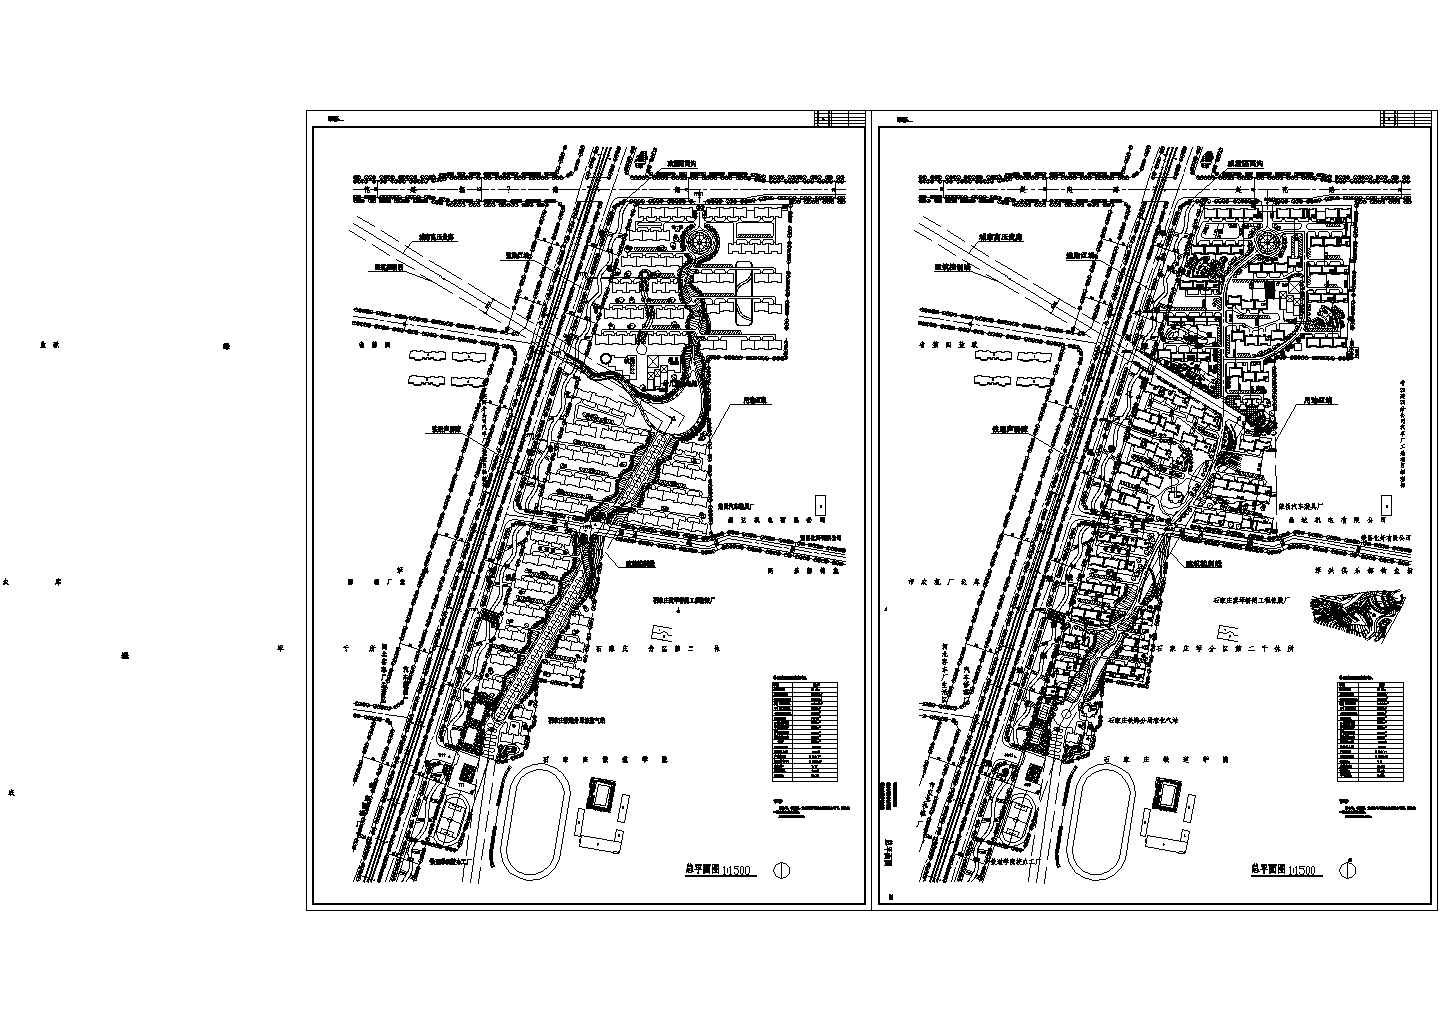 规划用地19.4ha住宅总户数1620户小区规划总图